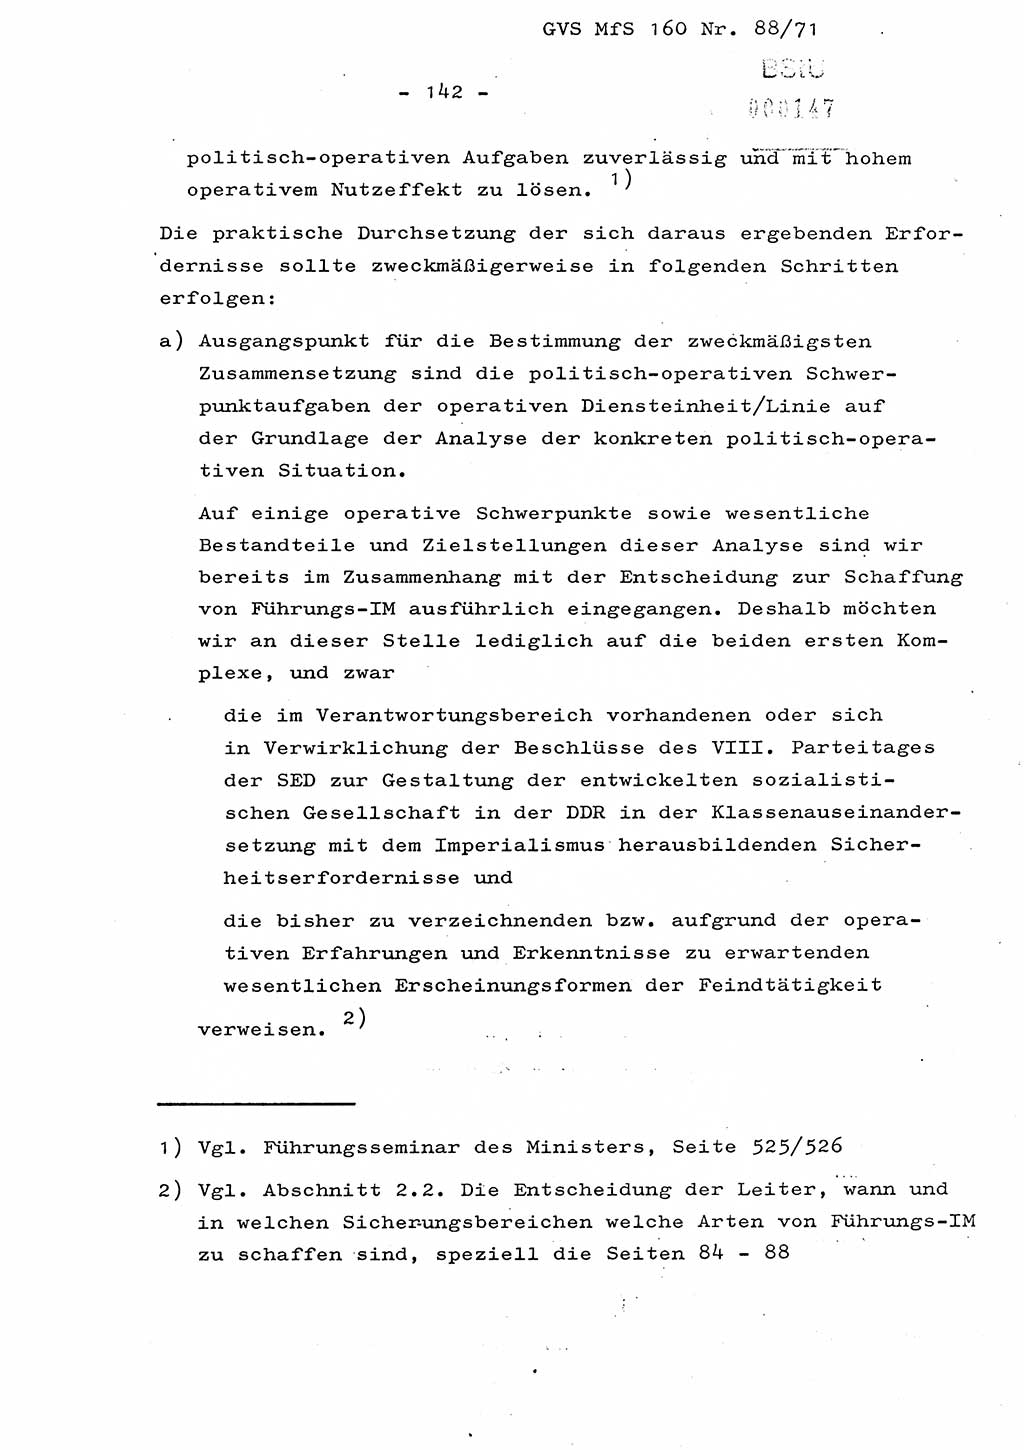 Dissertation Oberstleutnant Josef Schwarz (BV Schwerin), Major Fritz Amm (JHS), Hauptmann Peter Gräßler (JHS), Ministerium für Staatssicherheit (MfS) [Deutsche Demokratische Republik (DDR)], Juristische Hochschule (JHS), Geheime Verschlußsache (GVS) 160-88/71, Potsdam 1972, Seite 142 (Diss. MfS DDR JHS GVS 160-88/71 1972, S. 142)